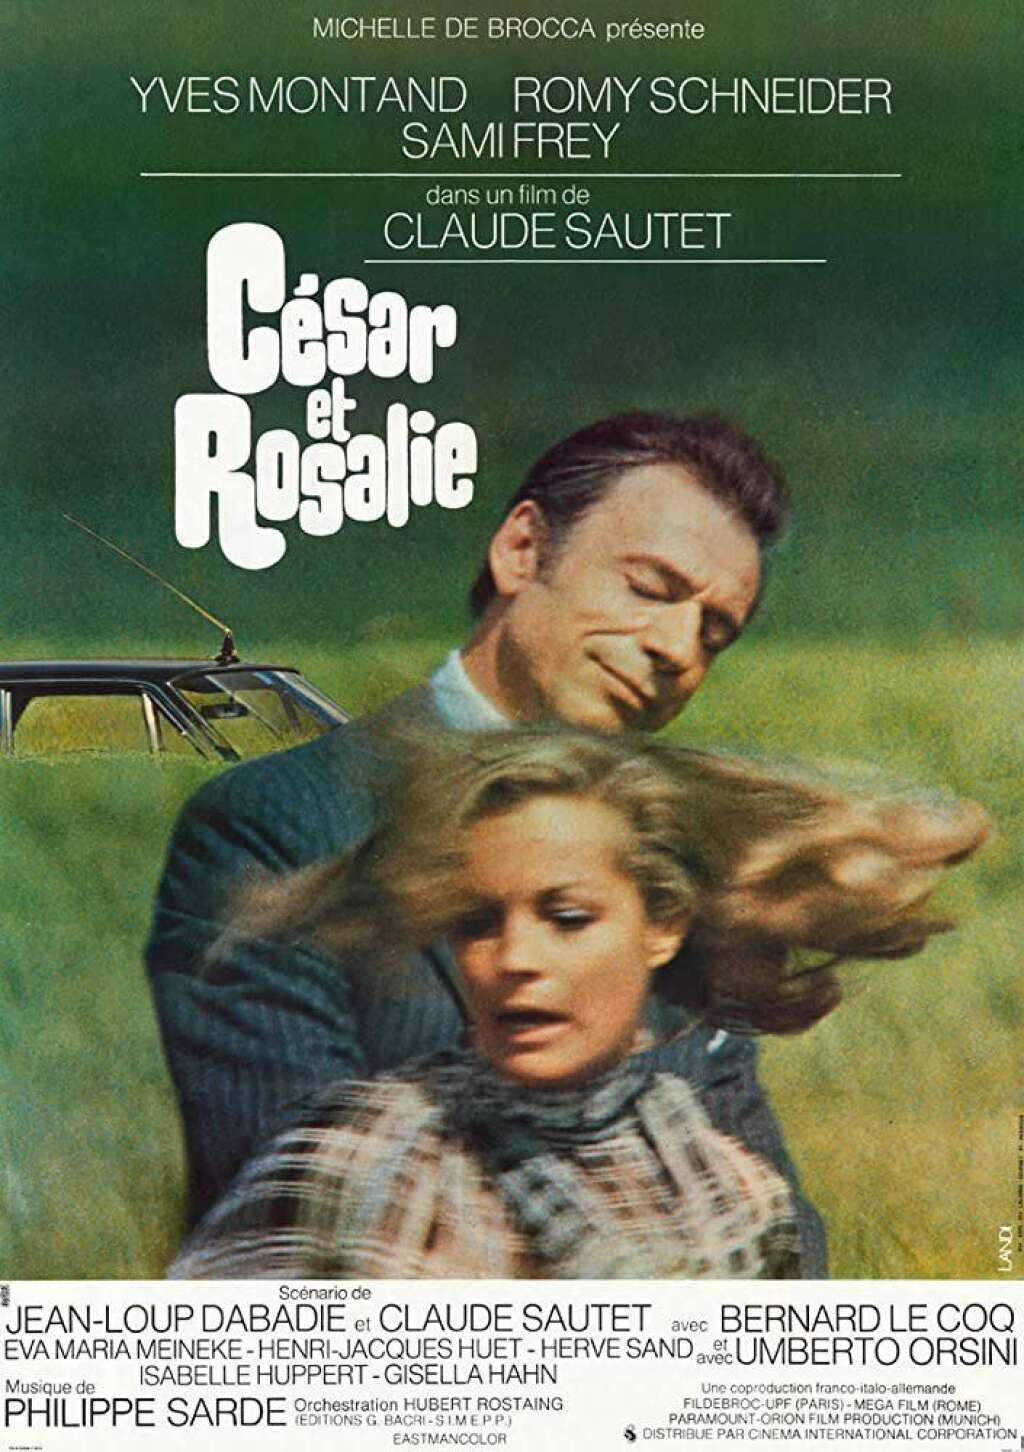 "César et Rosalie" de Claude Sautet (1972) - "César et Rosalie" de Claude Sautet (1972) a été scénarisé par Jean-Loup Dabadie.